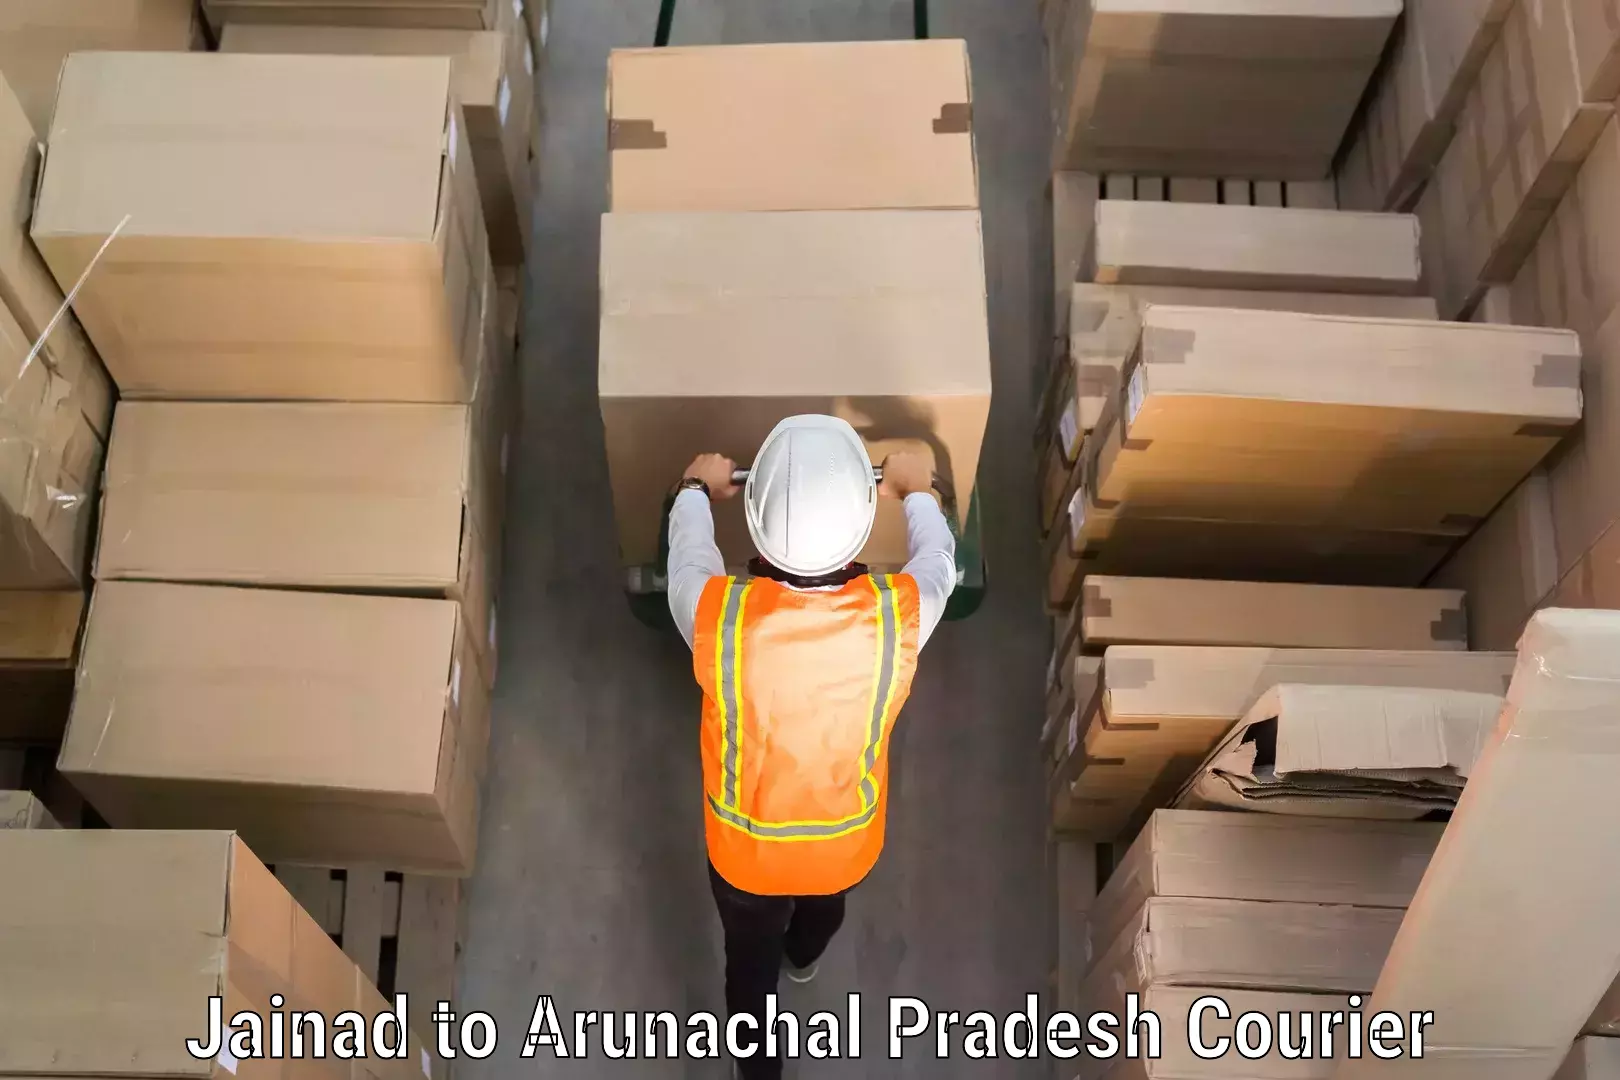 Automated luggage transport Jainad to Arunachal Pradesh